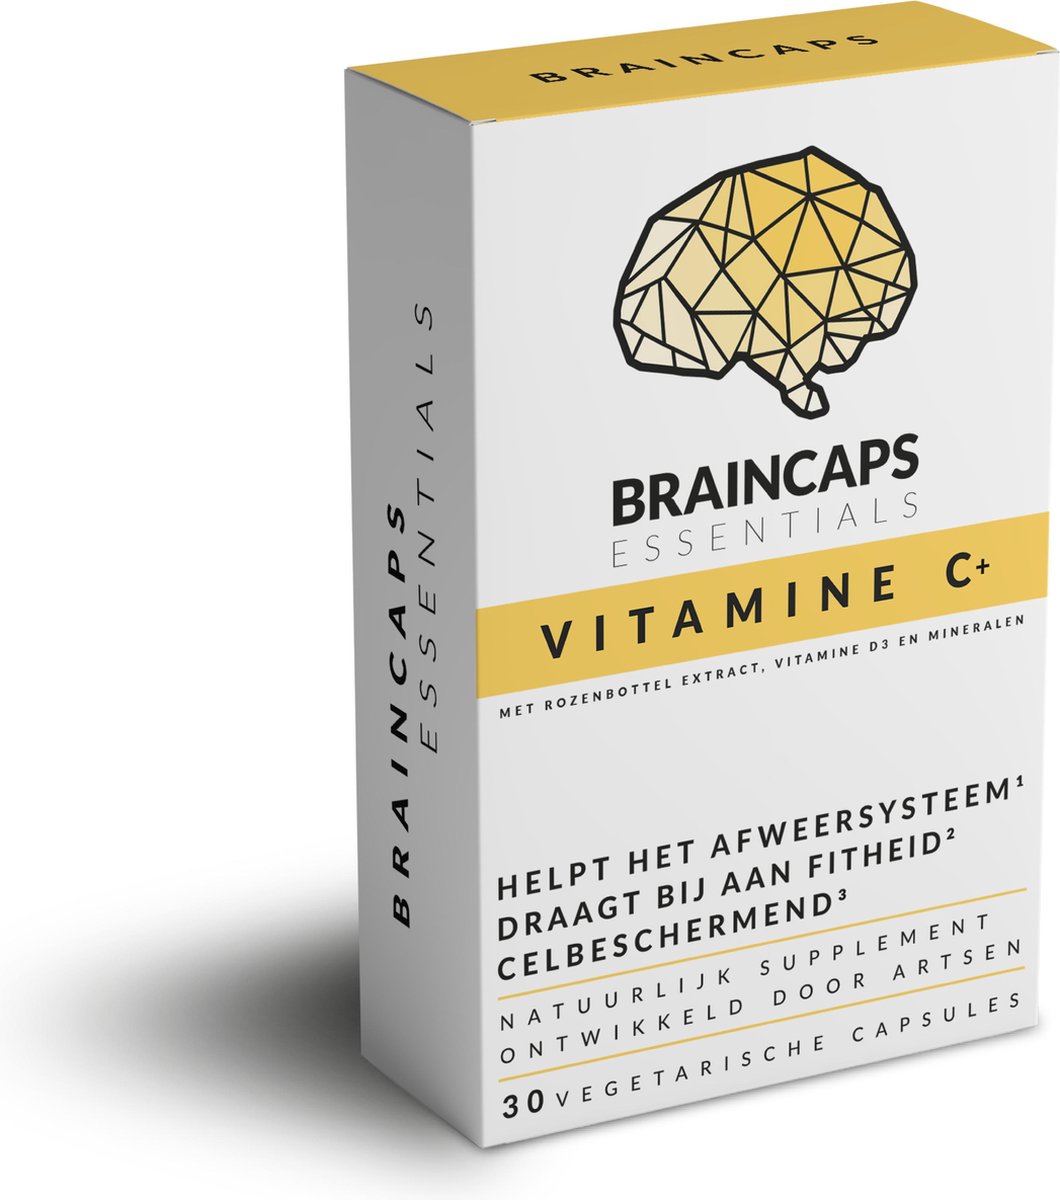 Vitamine C capsules van Braincaps – 6 in 1 Multivitamine - Maandverpakking